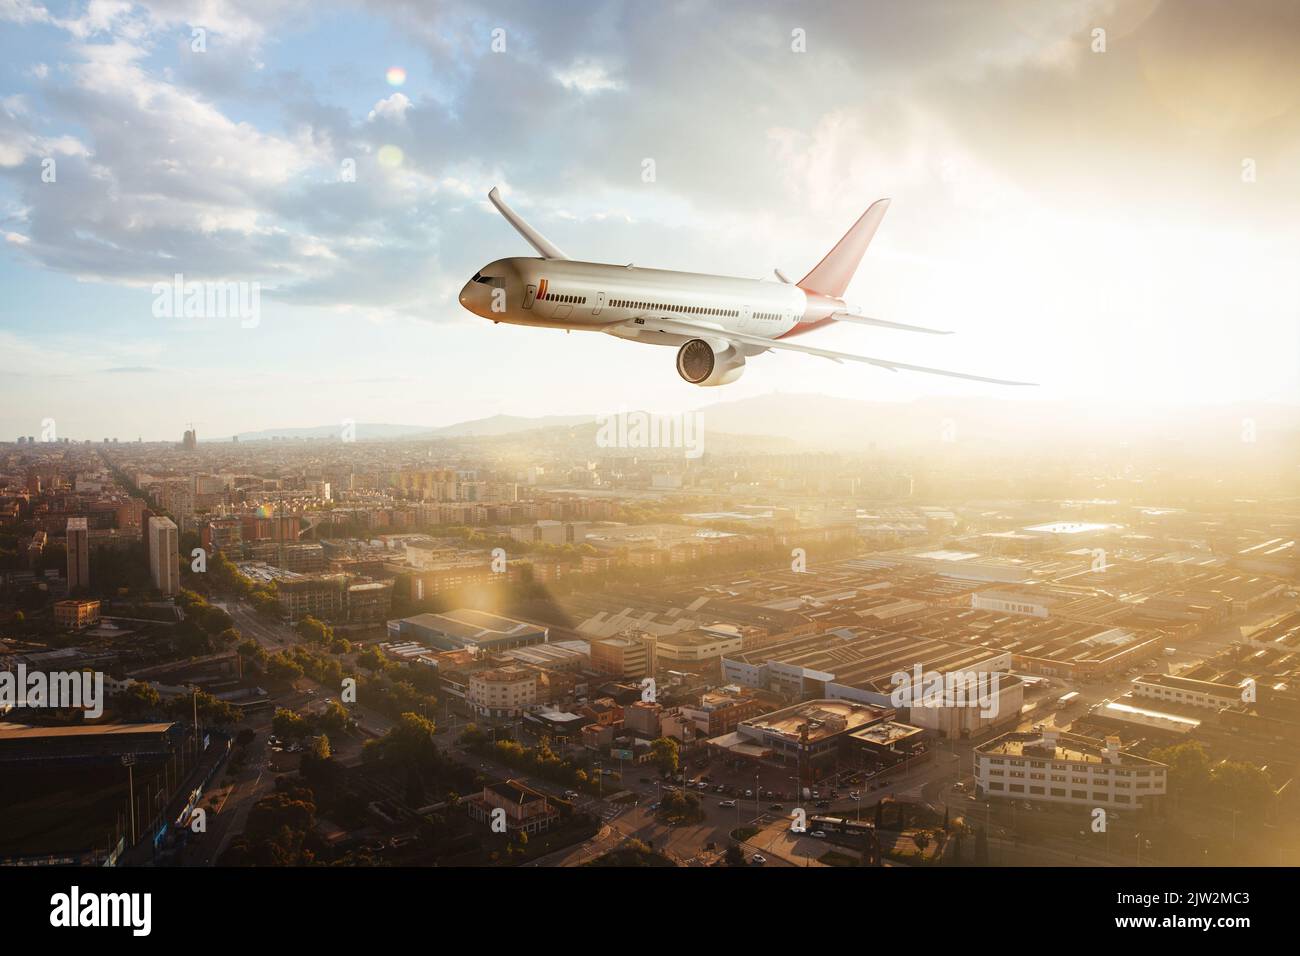 Seitenansicht eines kommerziellen Flugzeugs, das bei Sonnenuntergang über städtischen Gebieten fliegt. Mischung aus 3D und Rasterbildern Stockfoto